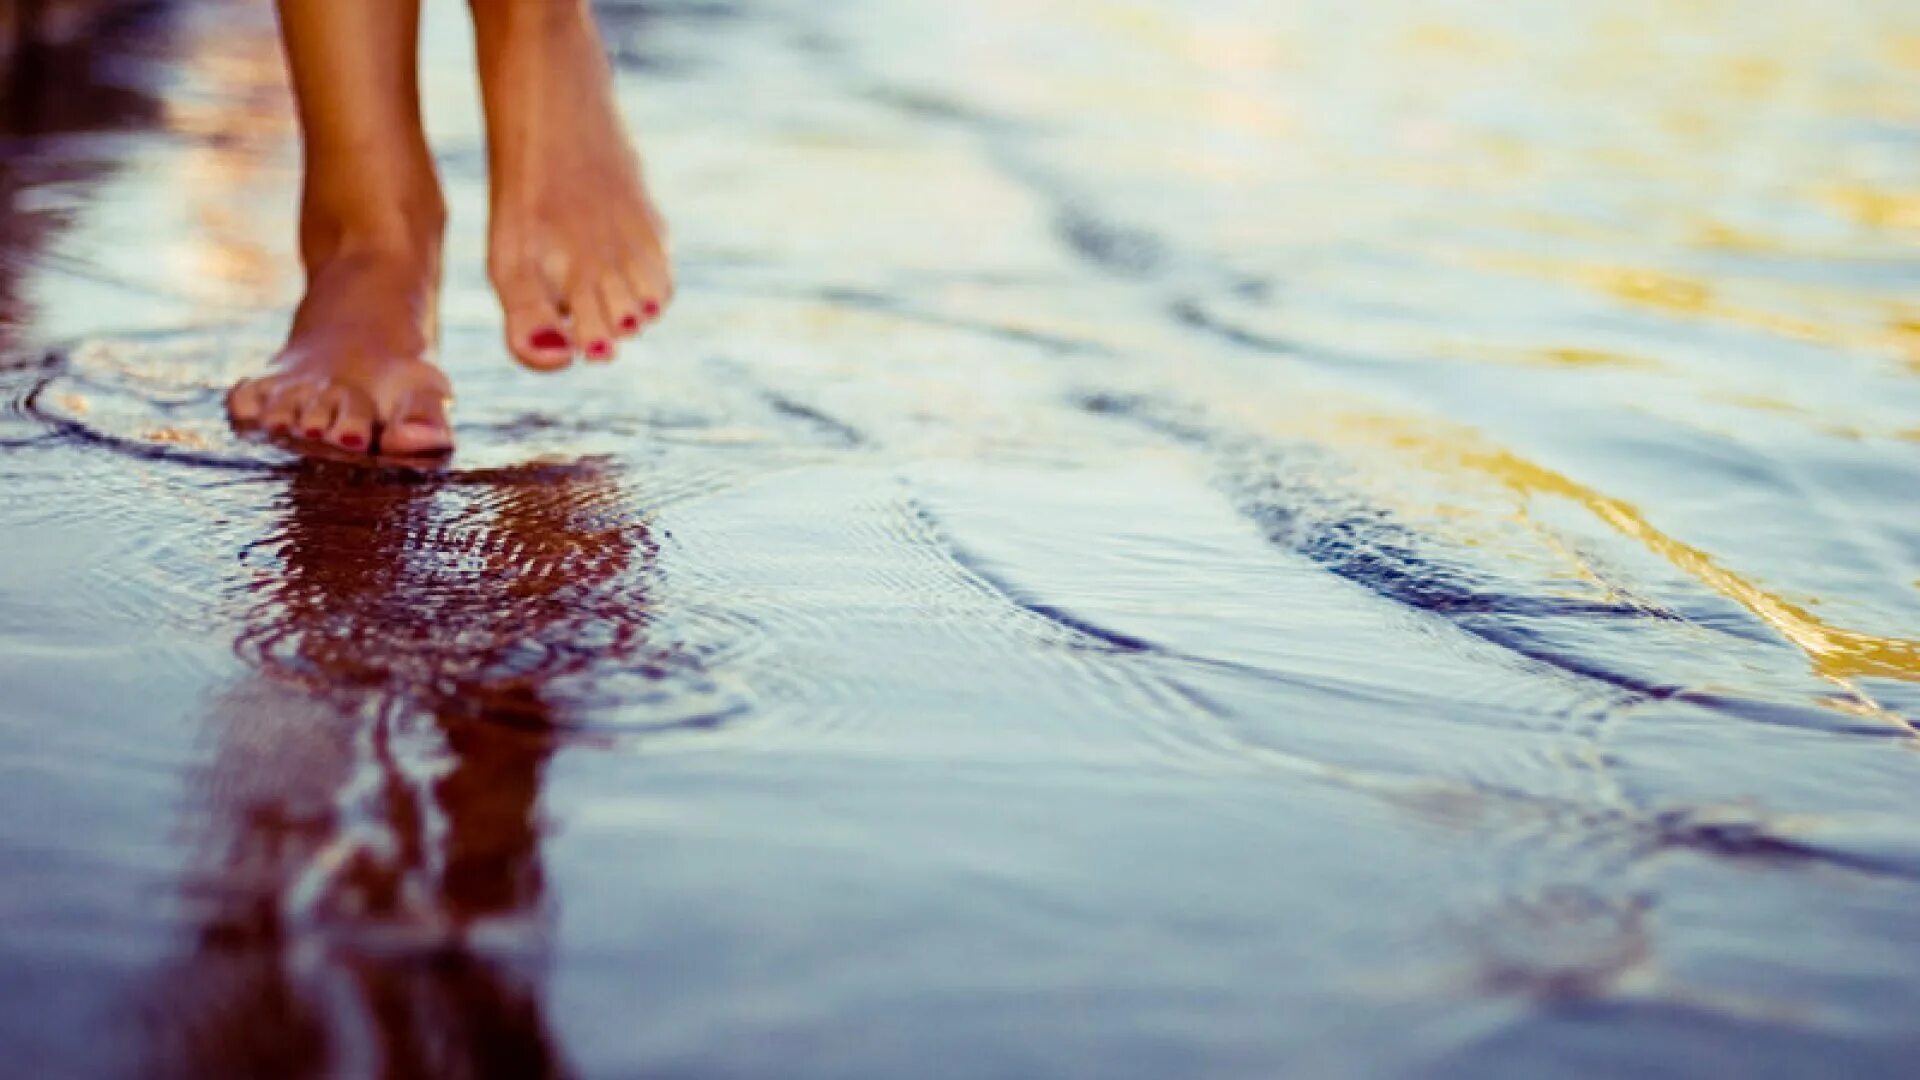 Грустью море не вычерпаешь. Ноги по воде. Босые ноги в воде. Ноги в луже. Маленькими шагами к счастью.